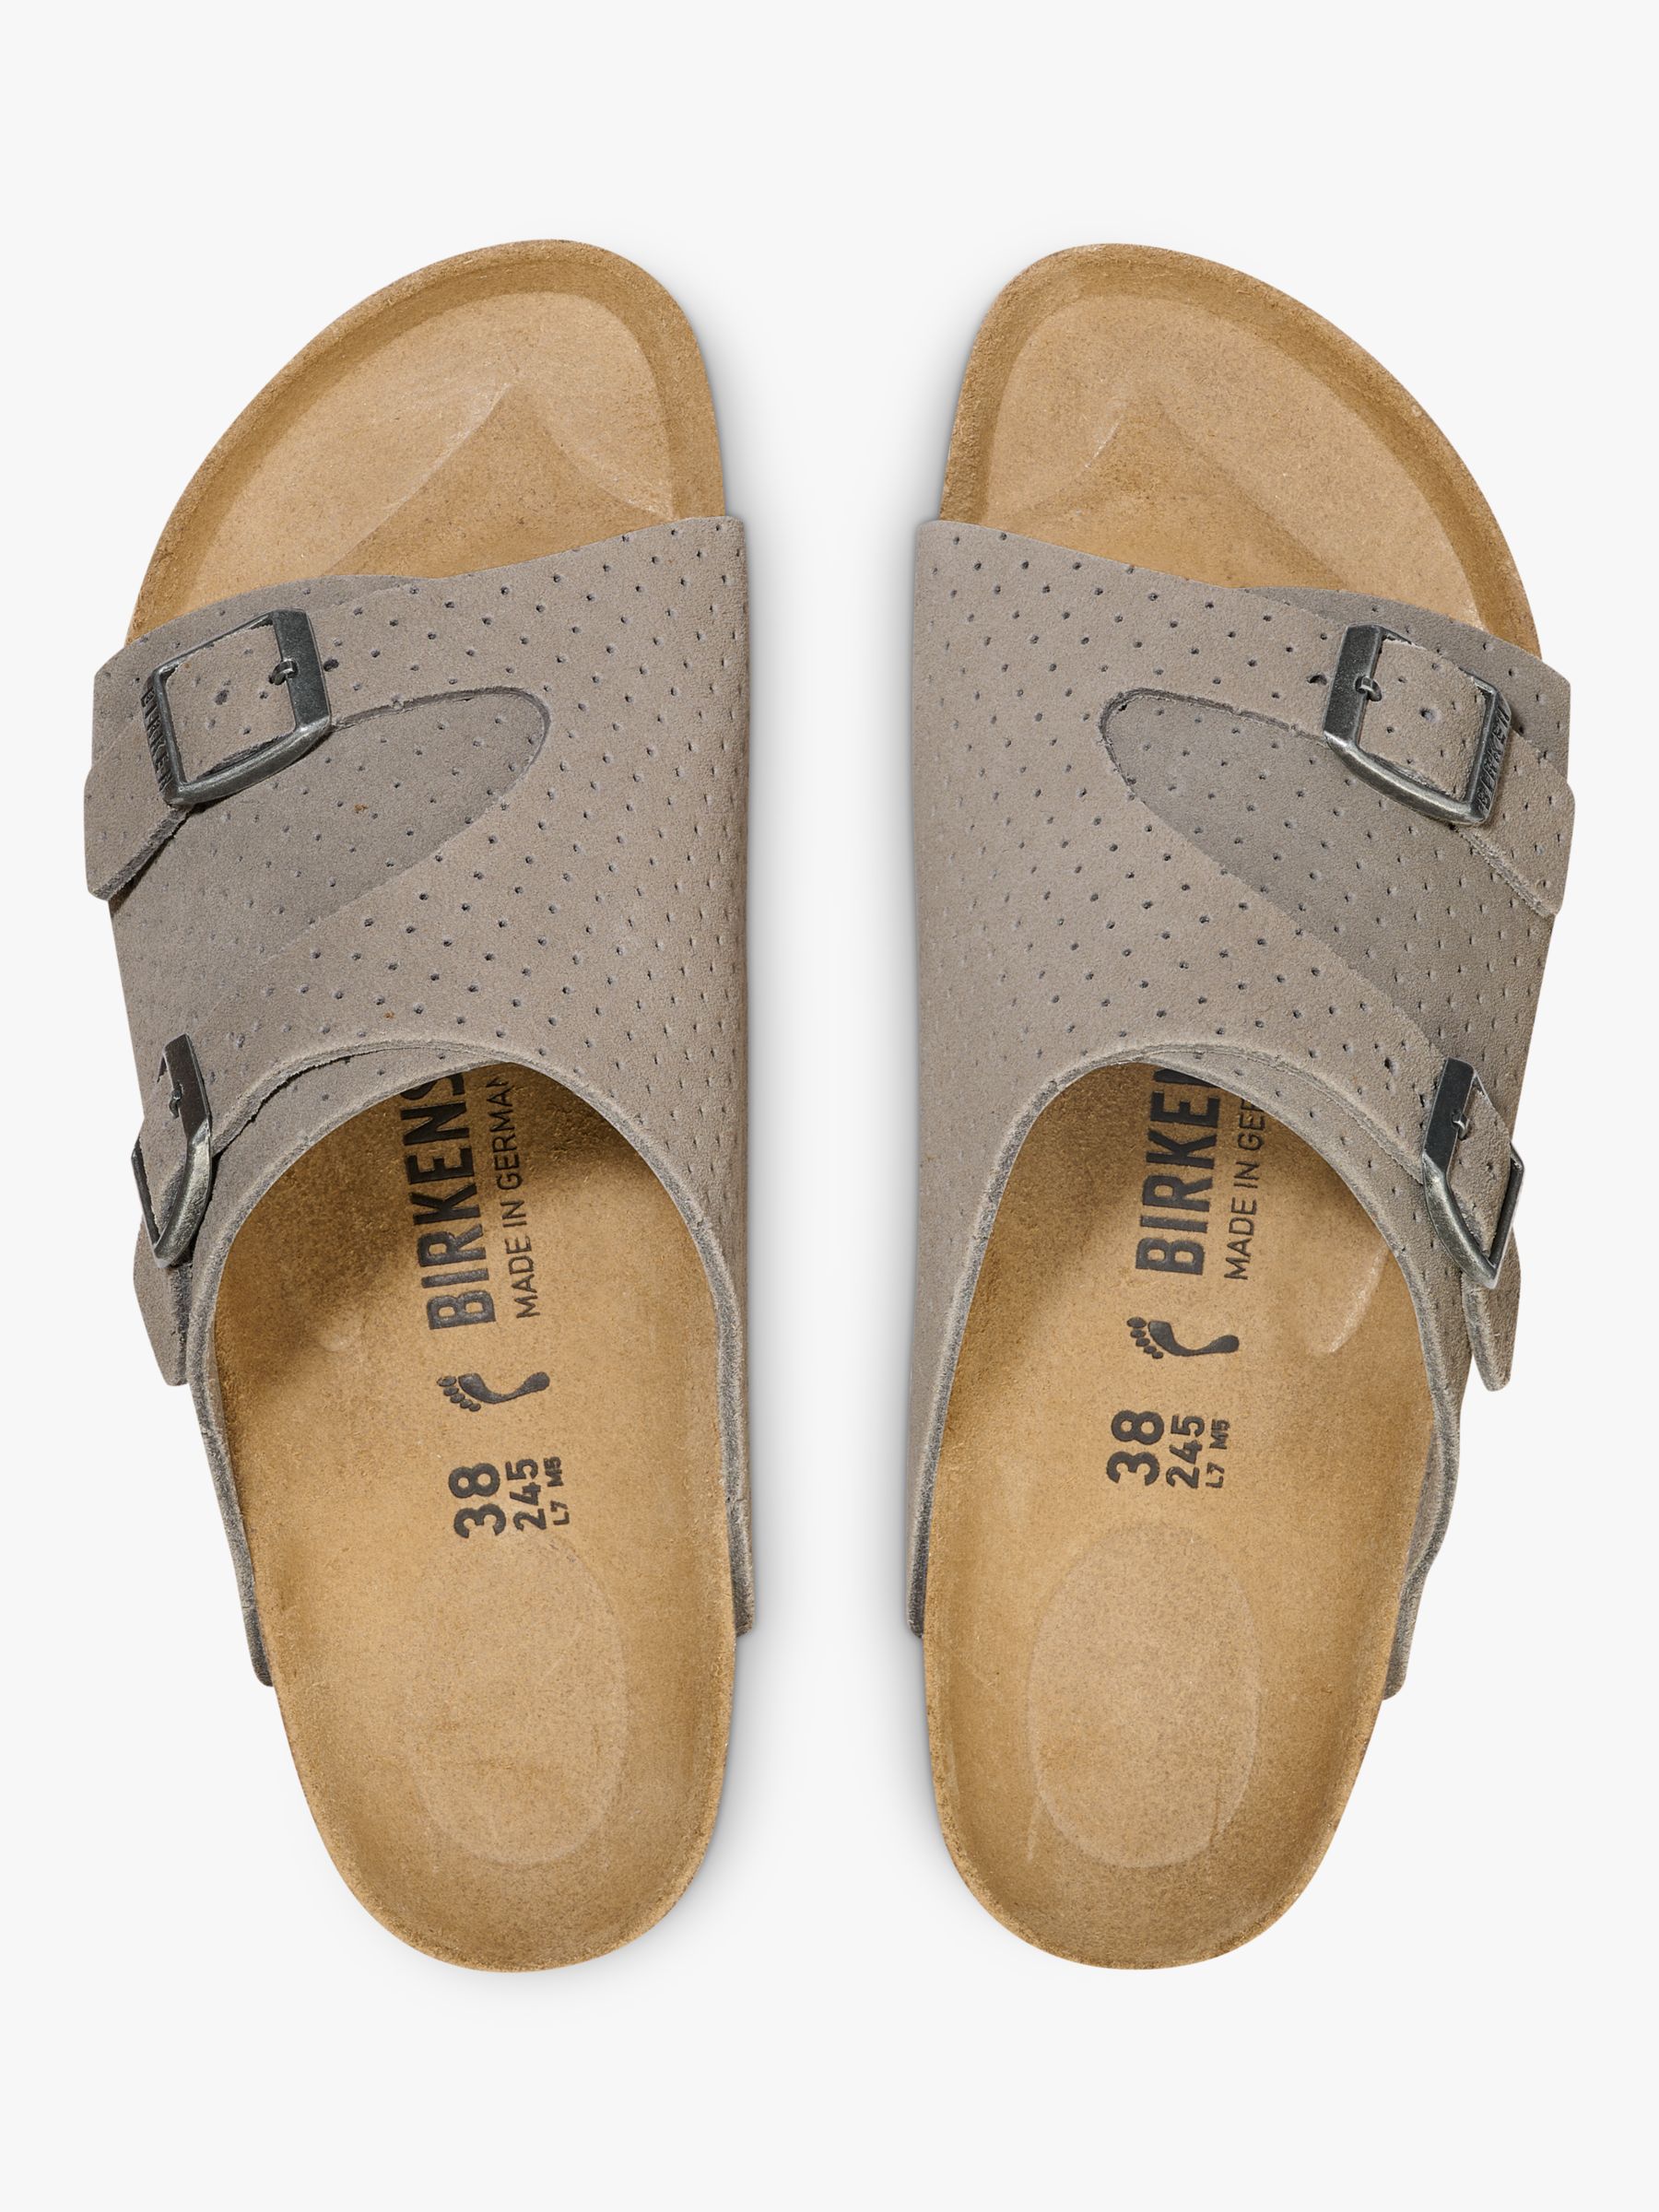 Birkenstock Zurich Dotted Suede Sandals, Grey, 7.5